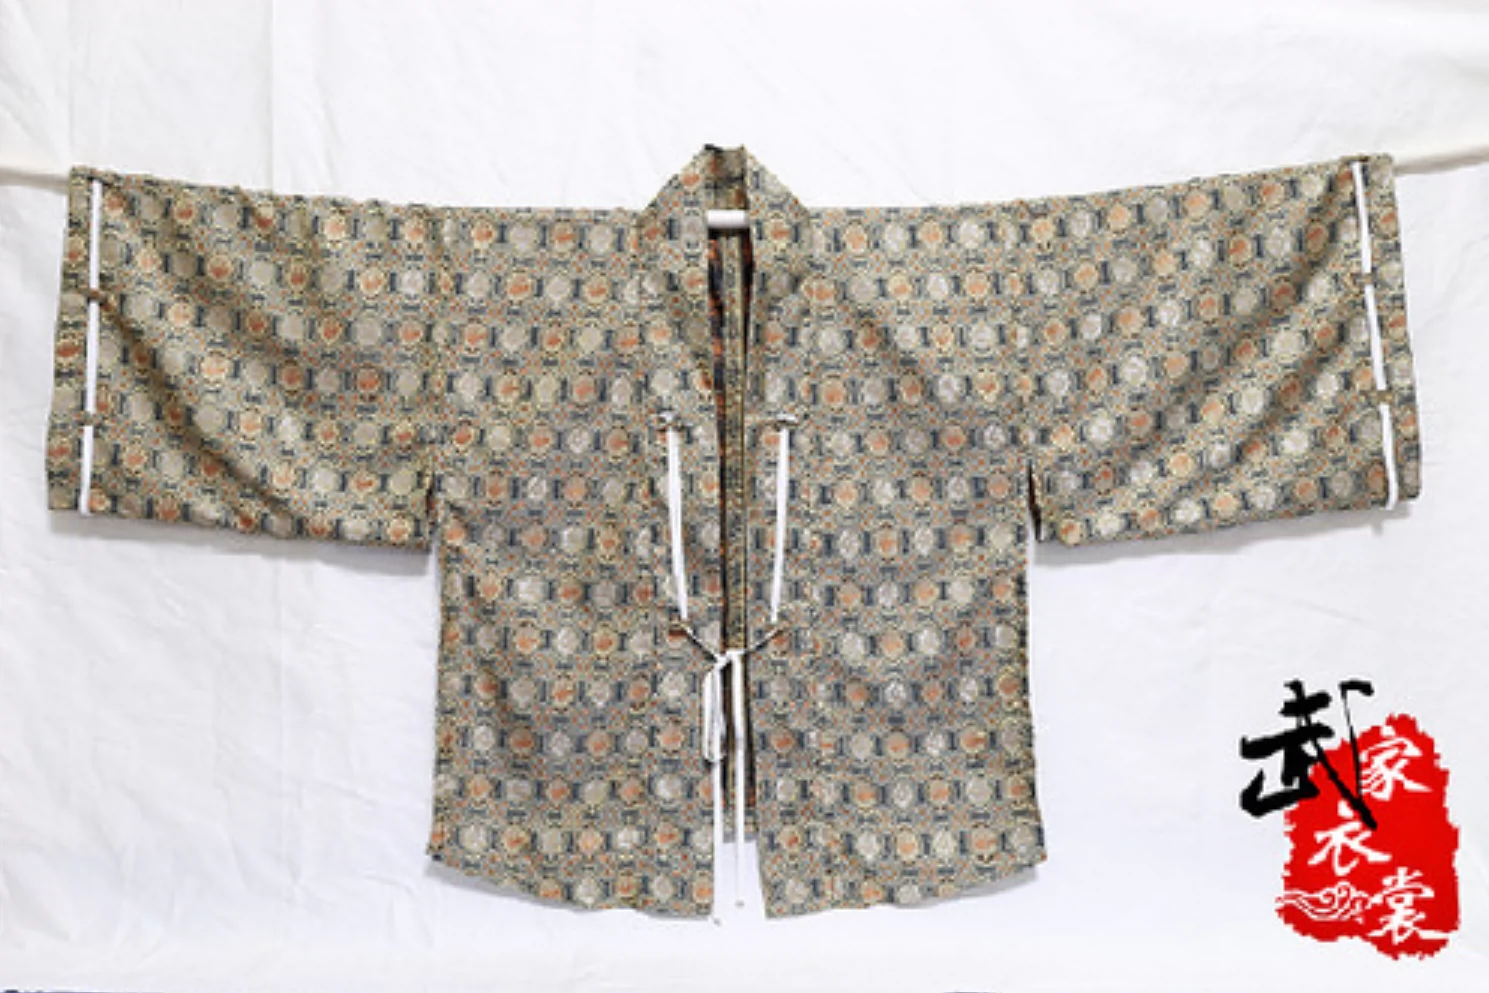 铠下着-马乘袴-日本盔甲服装-古代日本武士服装cos服-男士和服-Taobao